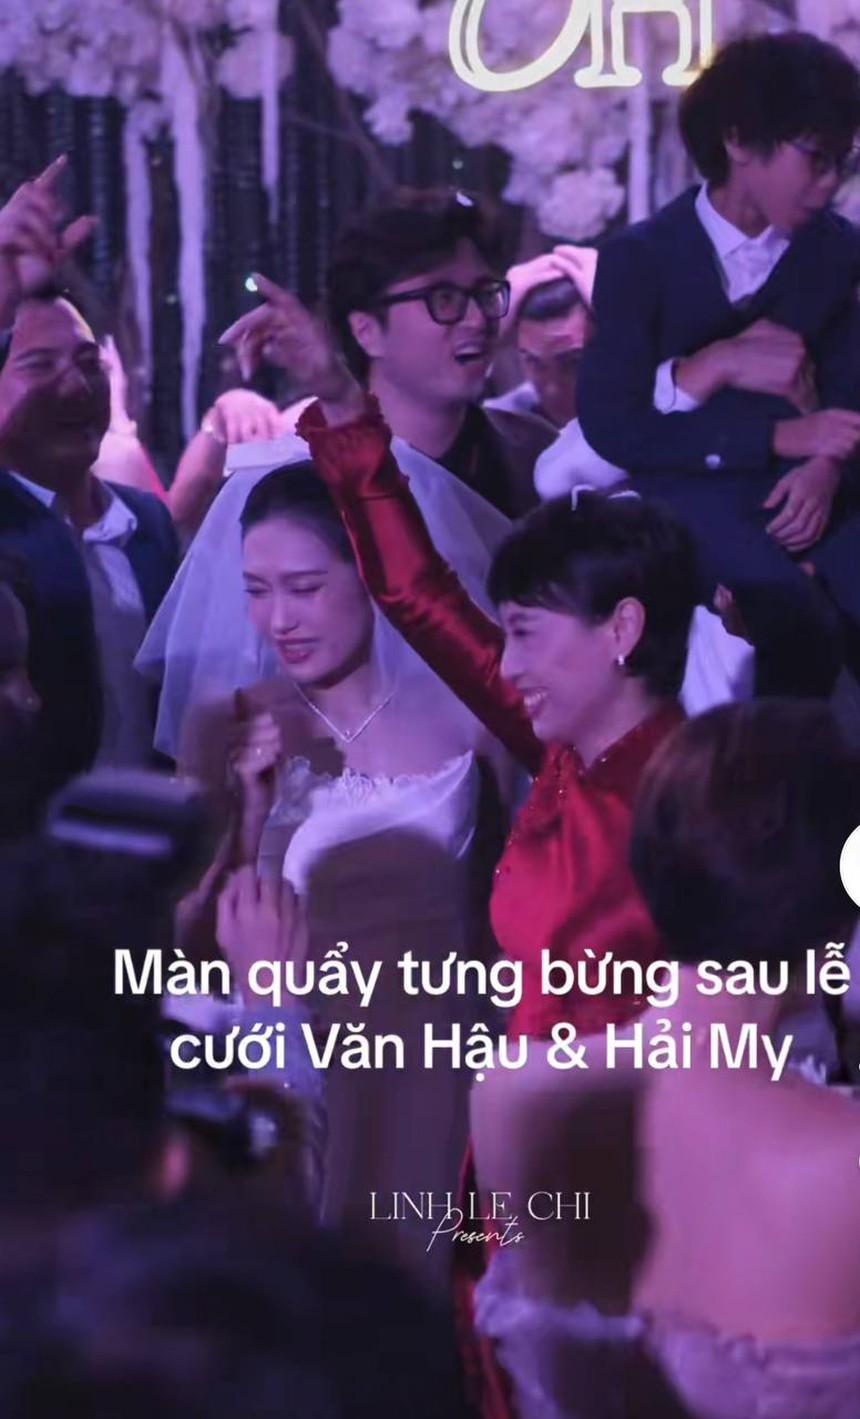 Hai thông gia nhà Văn Hậu và Hải My nhận mưa lời khen bởi sự tinh tế từ khâu tổ chức tiệc cưới-1